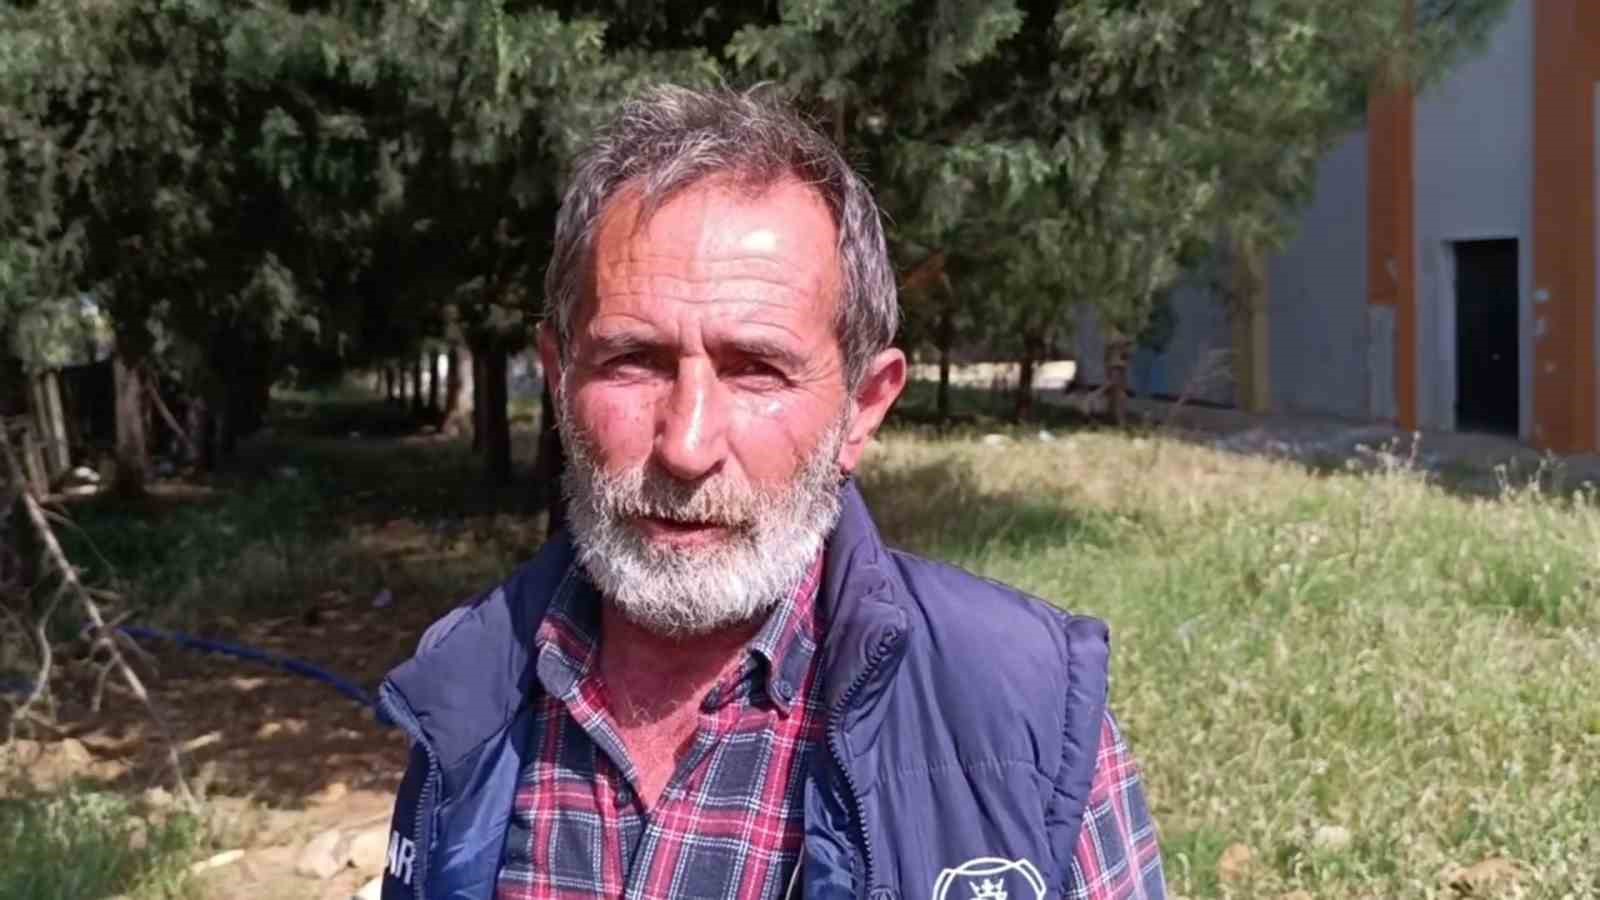 Gaziantep’te bitkin halde bulunan tilki tedavi altına alındı